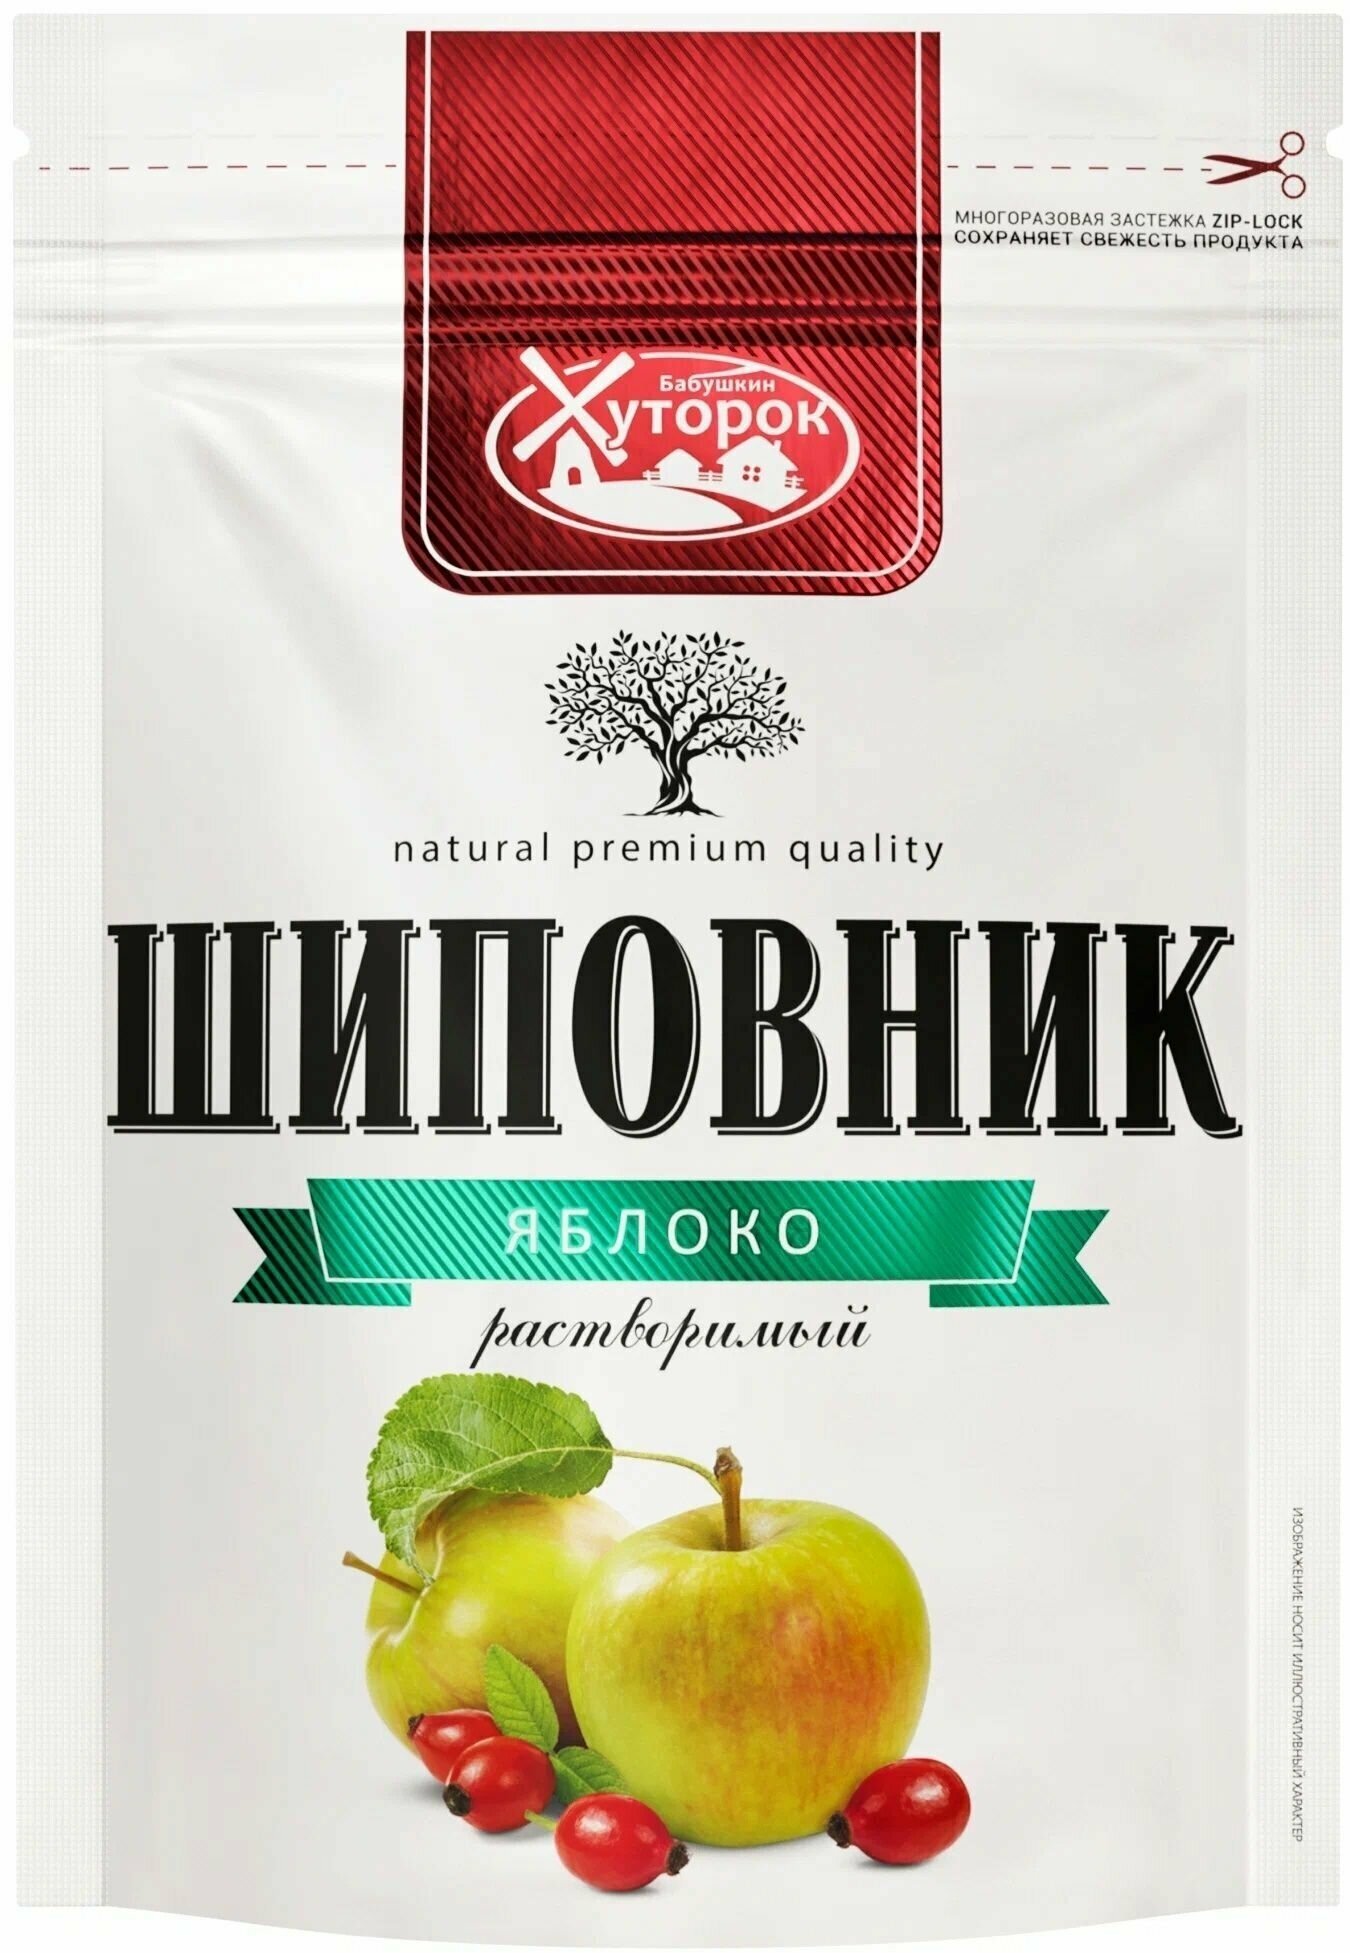 Шиповник Бабушкин Хуторок, с экстрактом яблока, растворимый, порошкообразный, 75 гр